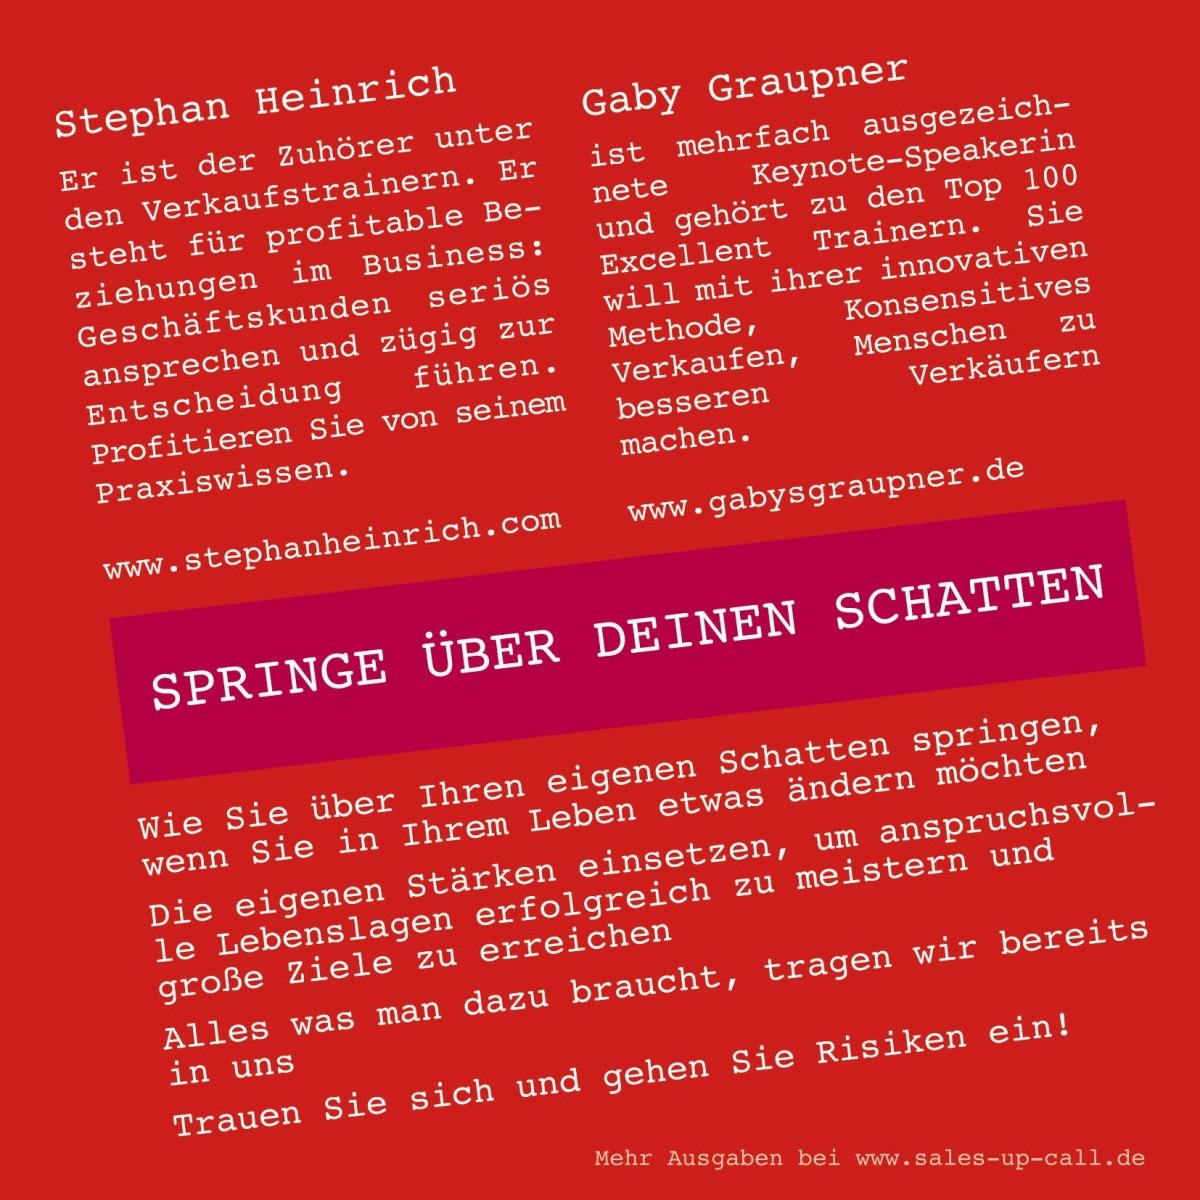 Springe über deinen Schatten - Sales-up-Call - Stephan Heinrich